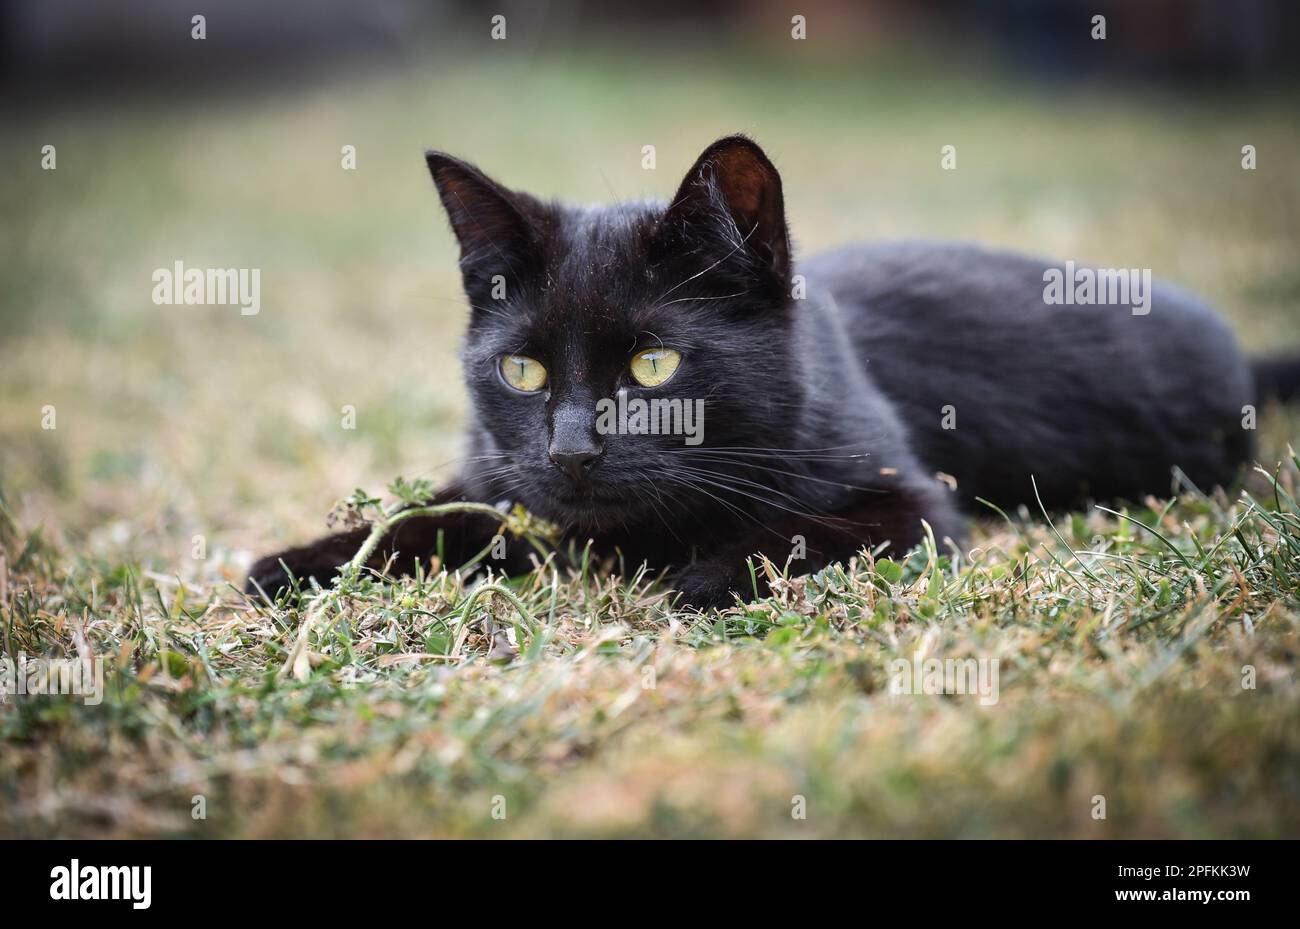 Junge schwarze Katze mit grünen Augen, die im Sommer auf dem Rasen liegt und zusieht Stockfoto